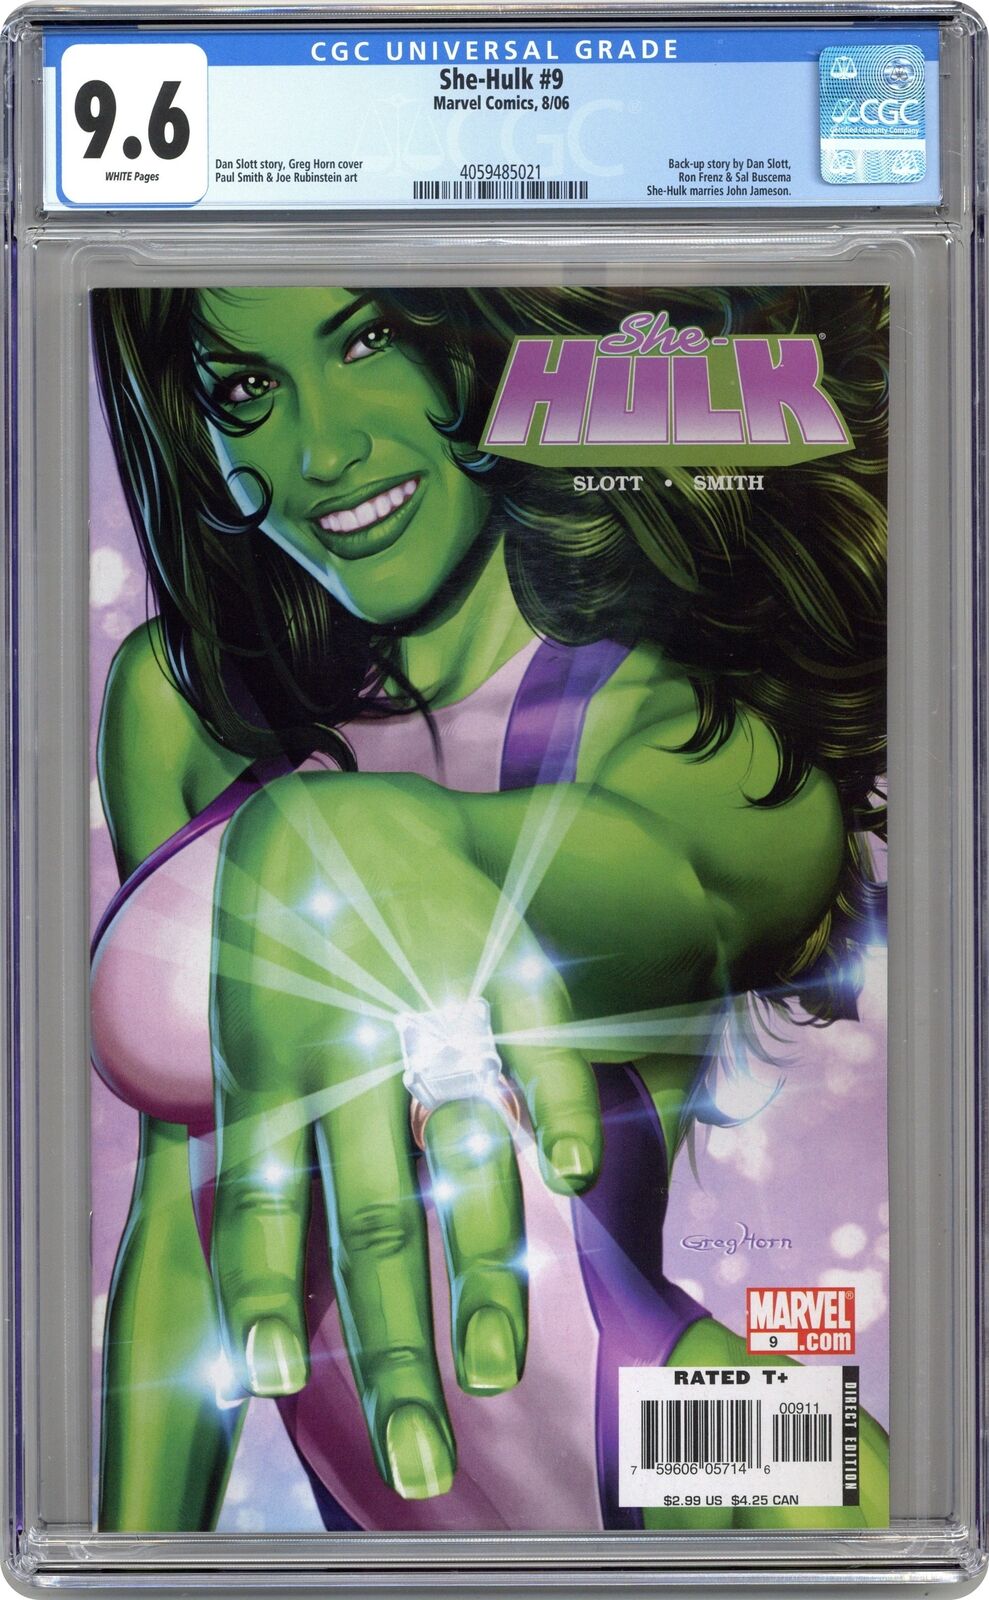 She-Hulk #9 CGC 9.6 2006 4059485021